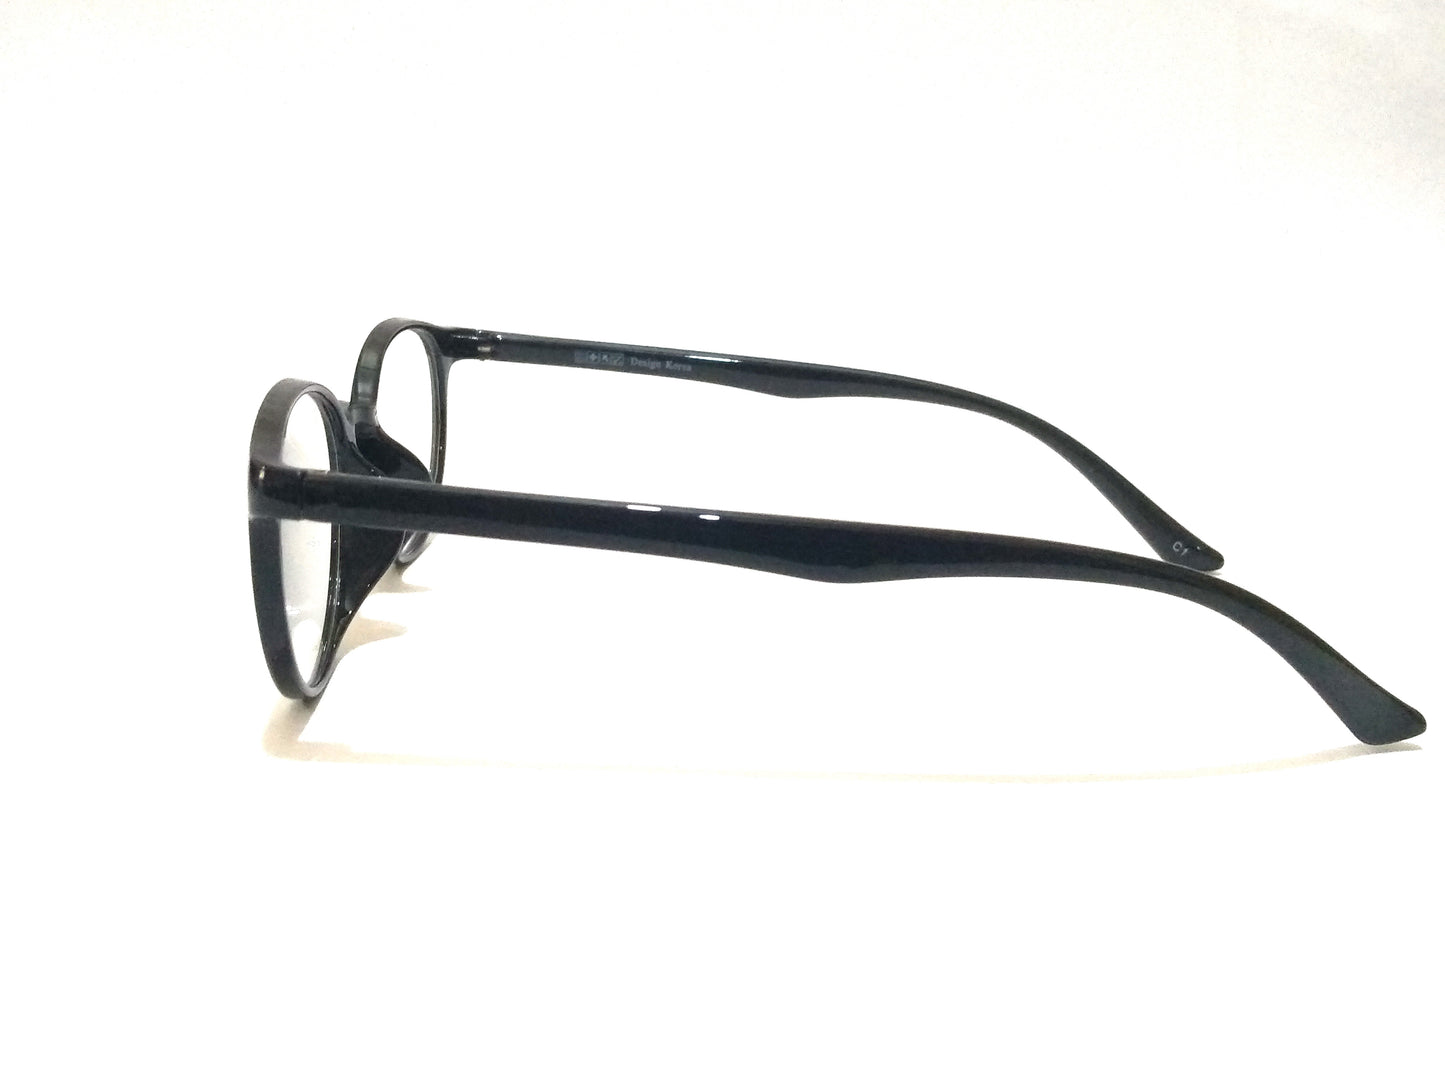 Black Round Glasses for Men Women Eyeglasses 17078